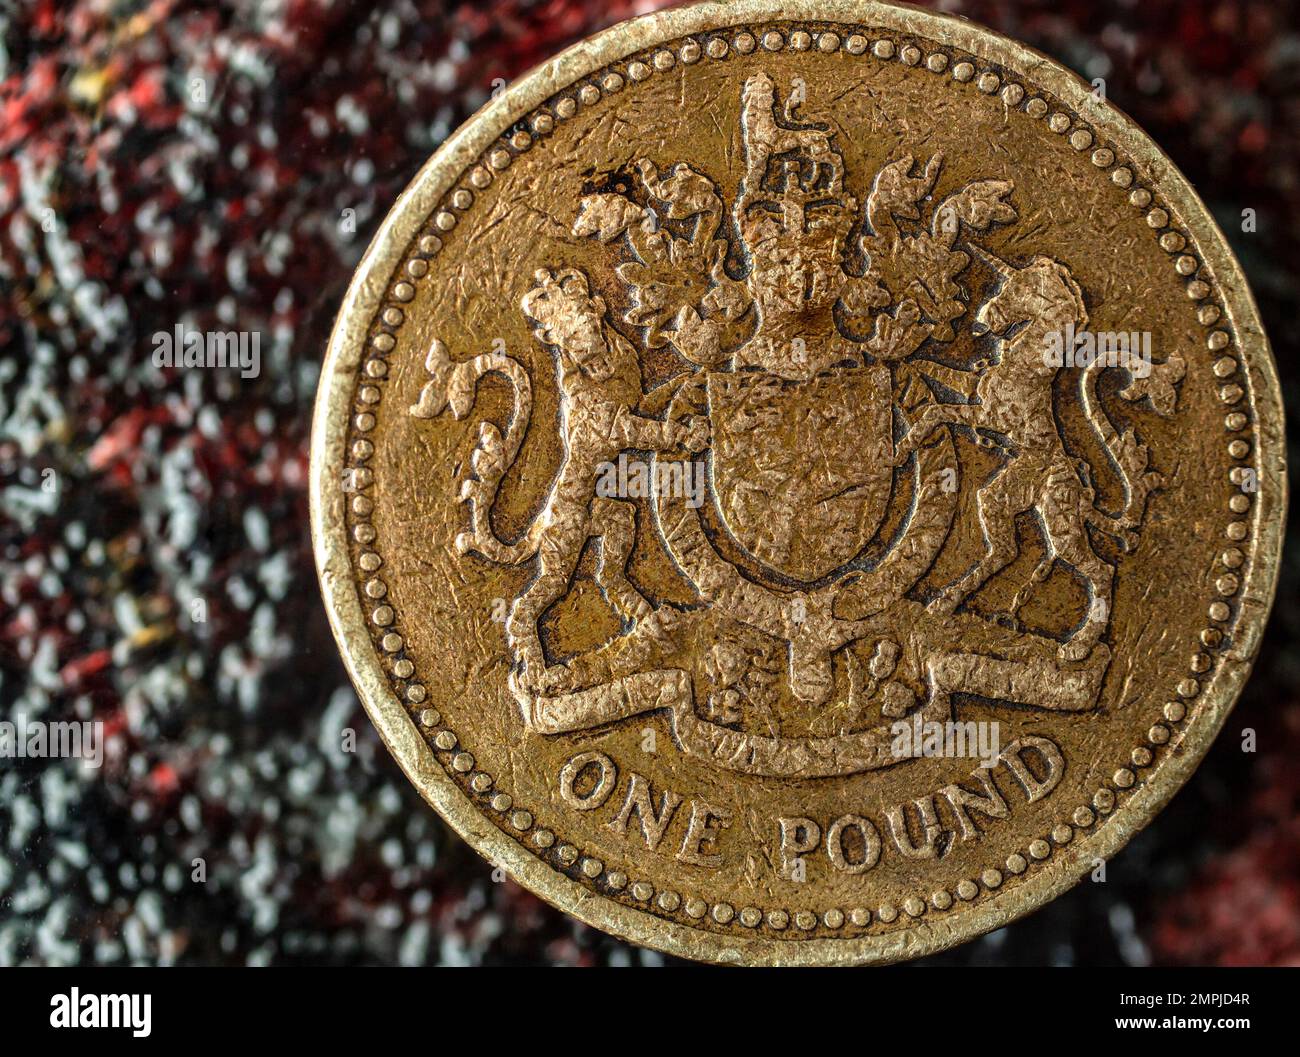 Great Britain One Pound coin, usé et rayé, macro de mise au point douce, montage spectaculaire Banque D'Images